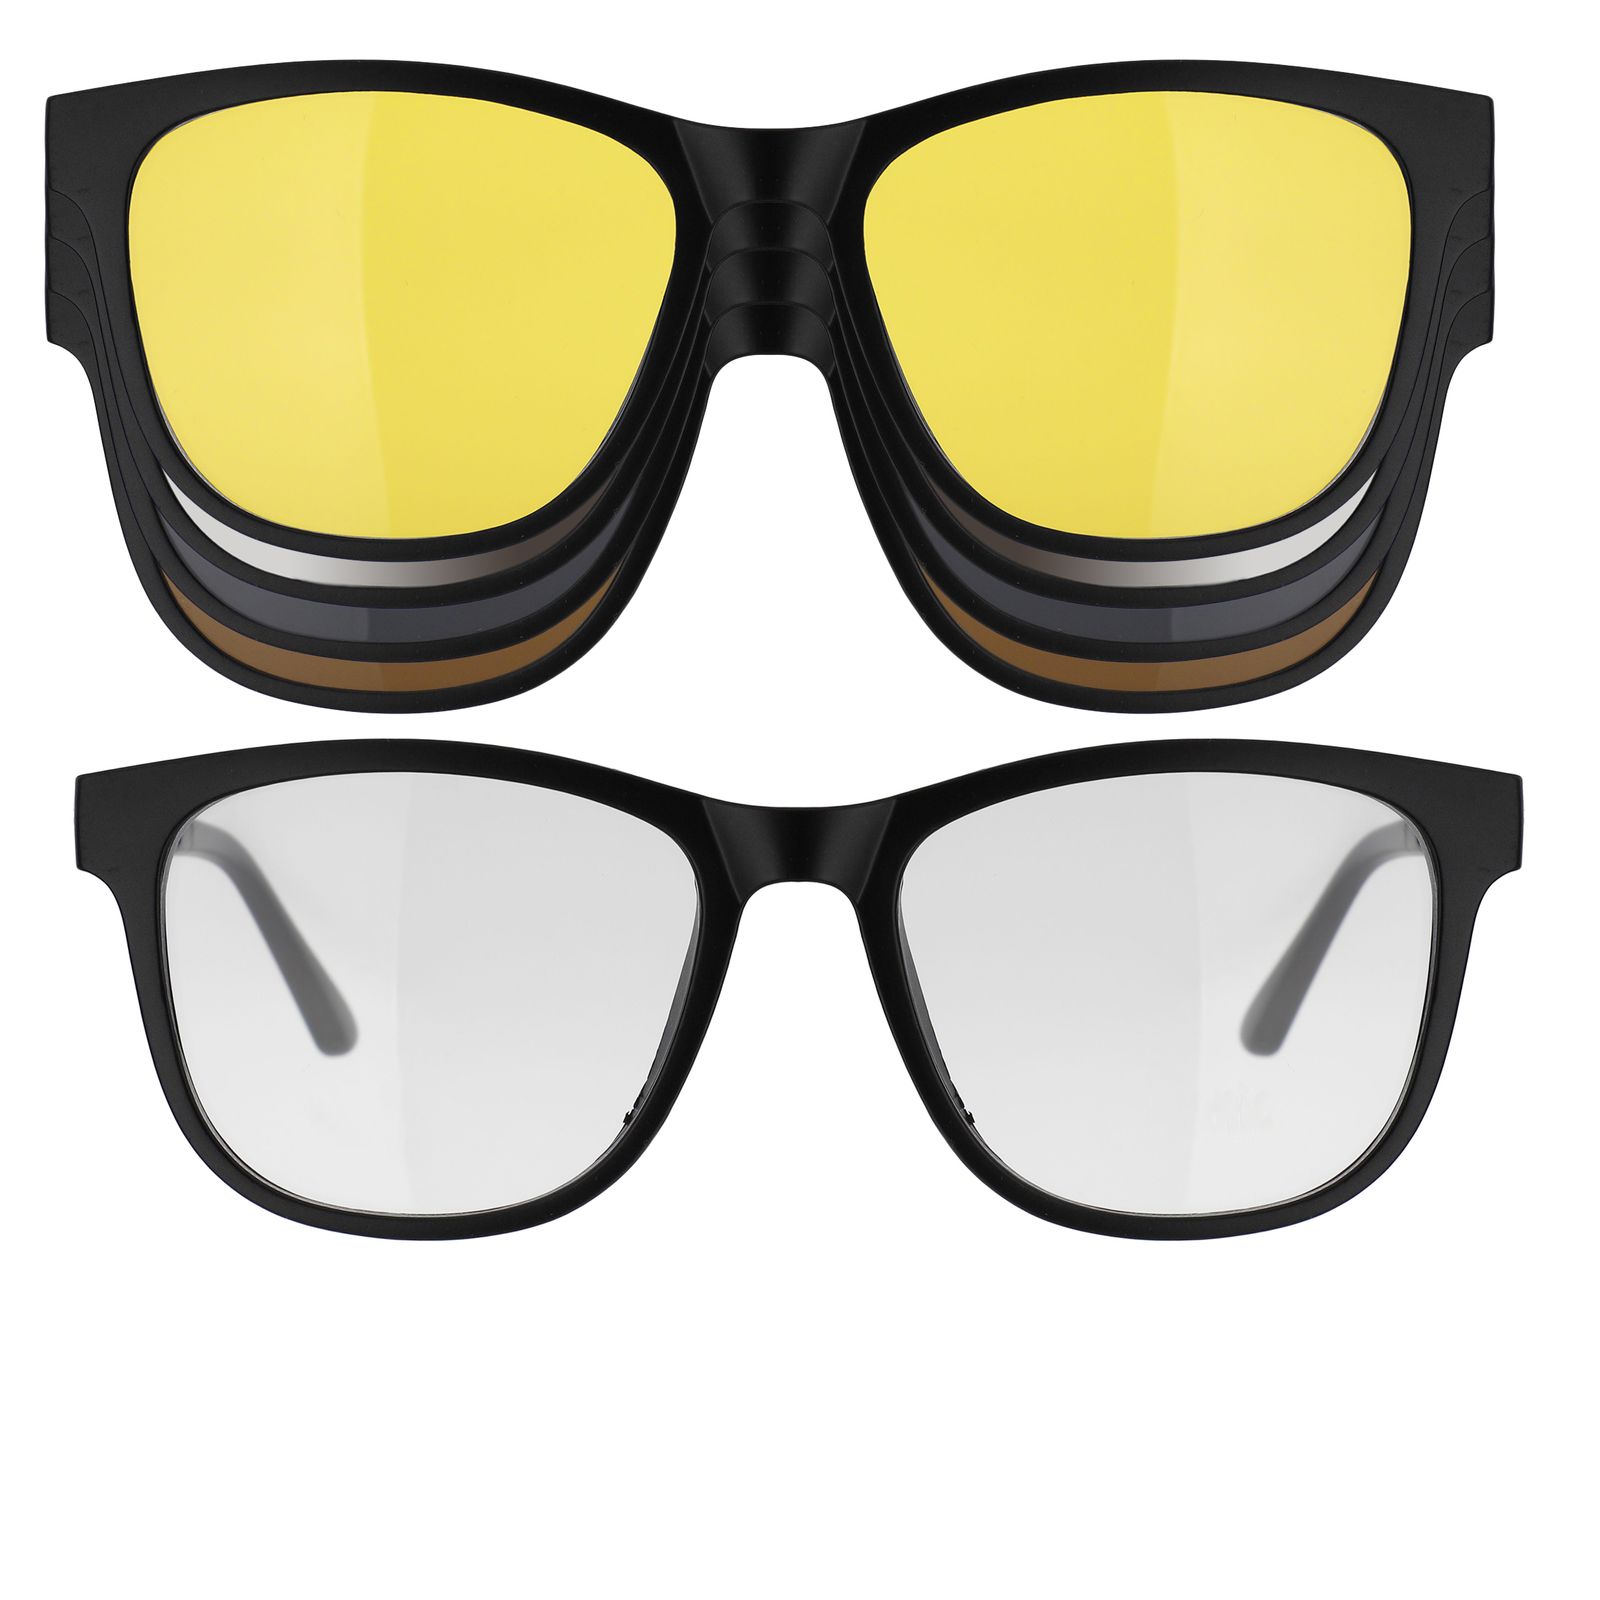 فریم عینک طبی دونیک مدل tr2230-c2 به همراه کاور آفتابی مجموعه 5 عددی -  - 1